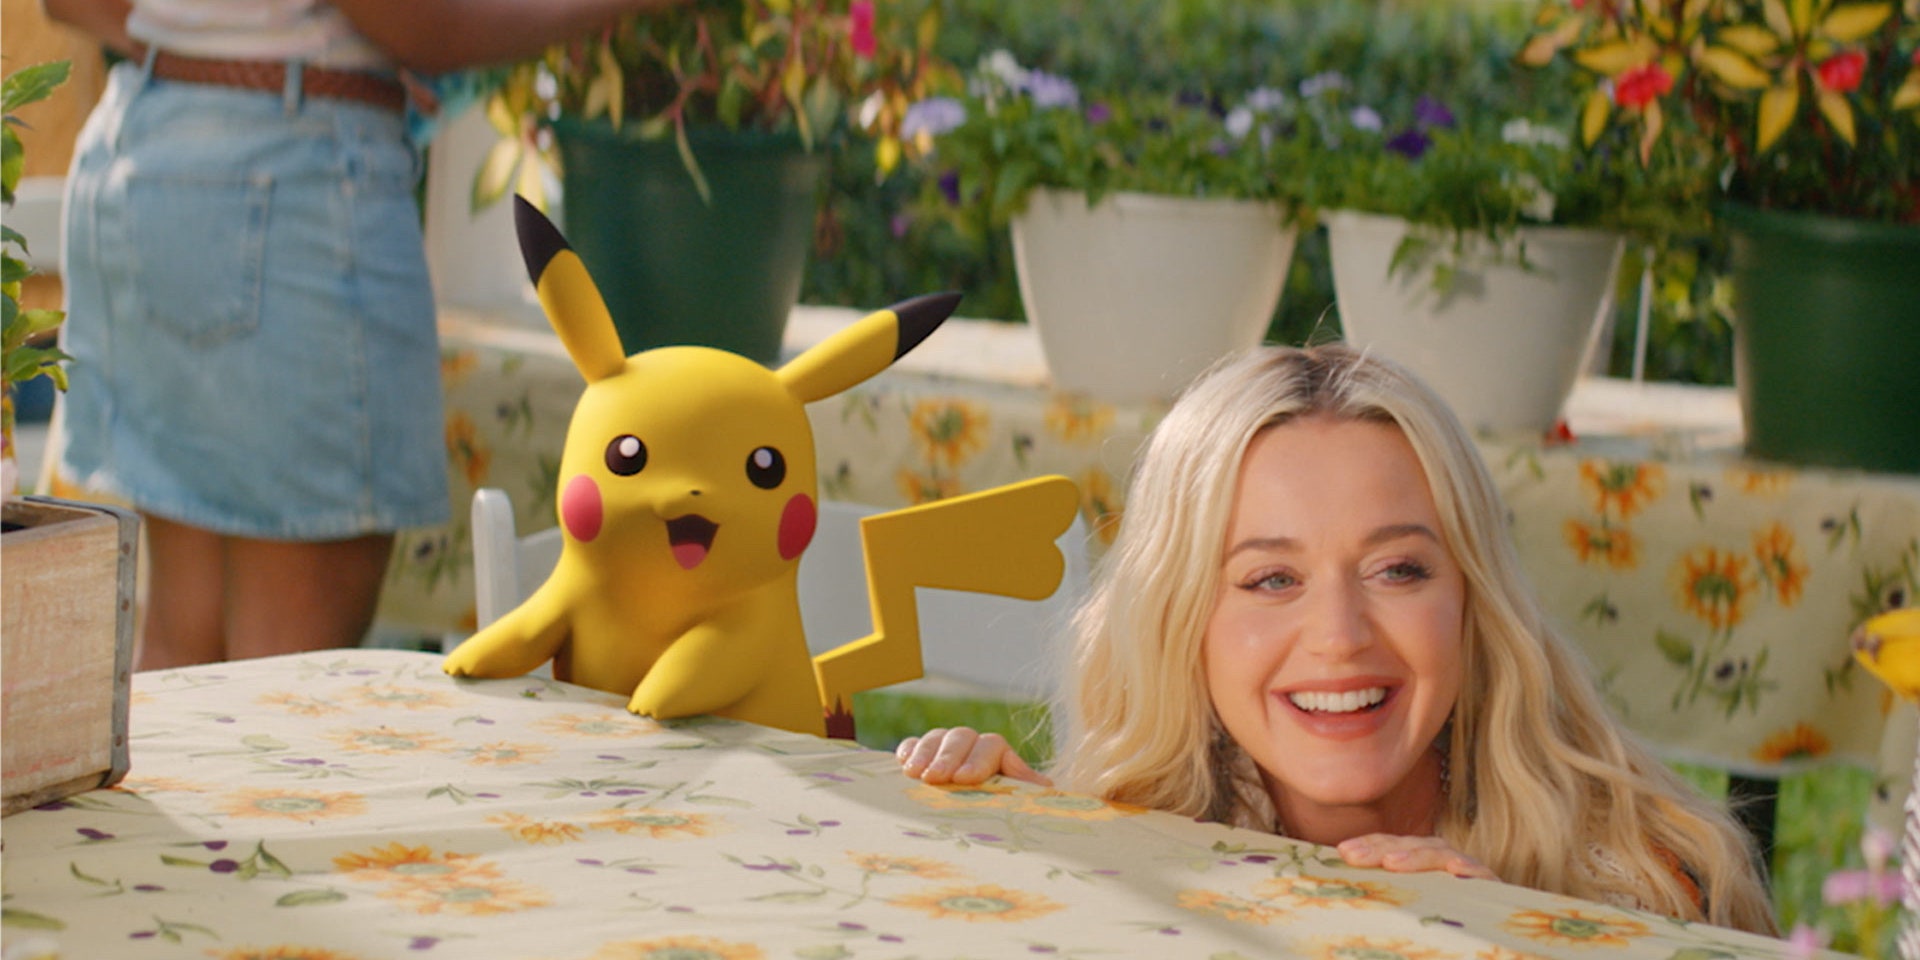 Katy Perry compartilha vídeo da nova música inspirada em Pikachu “Electric”: Assista